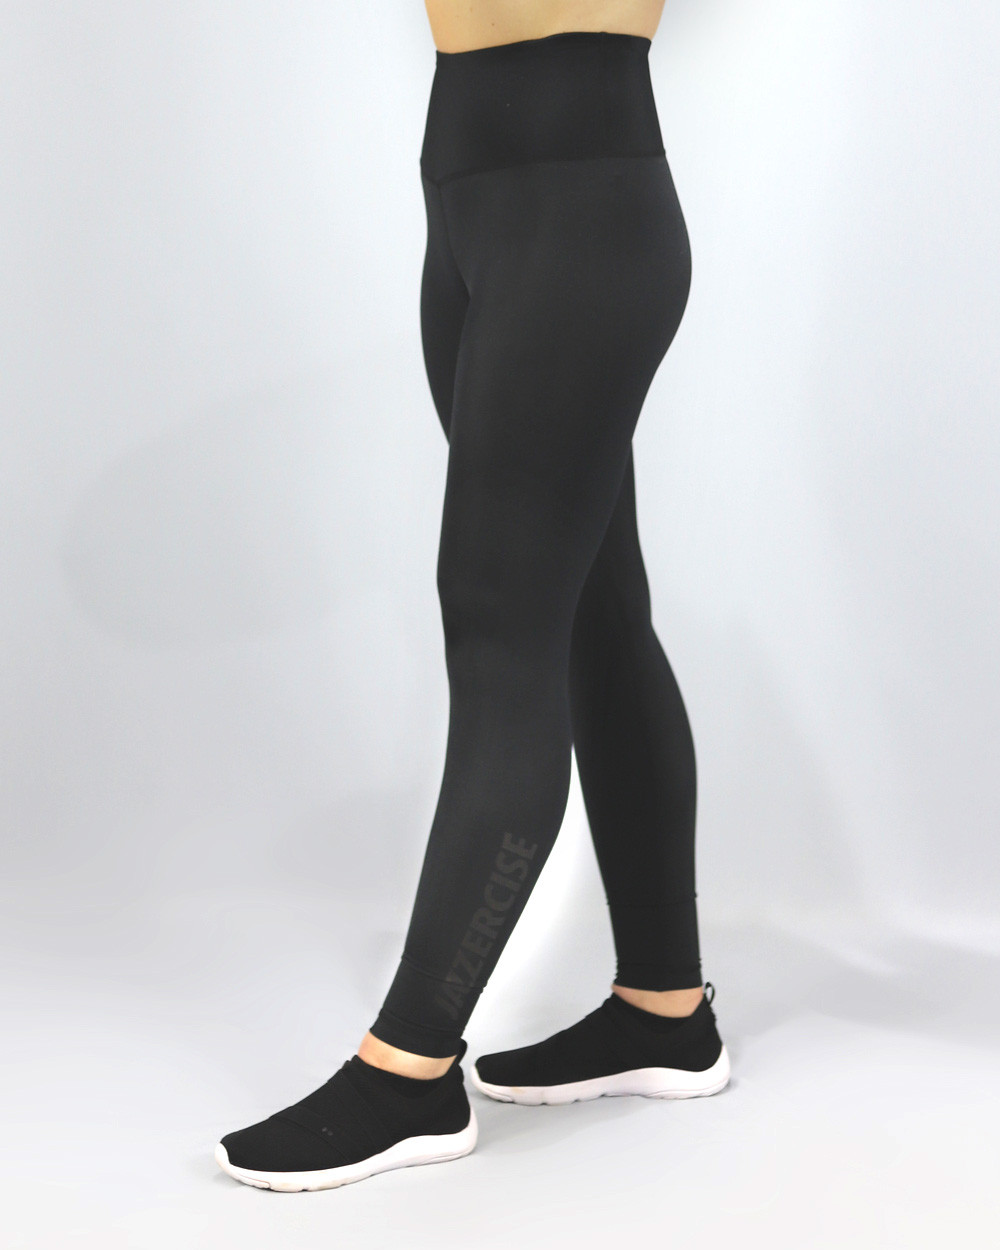 Black 90 Degree by Reflex Leggings Style PW75830 Sheer Back Leg Size M. $88  - Deblu